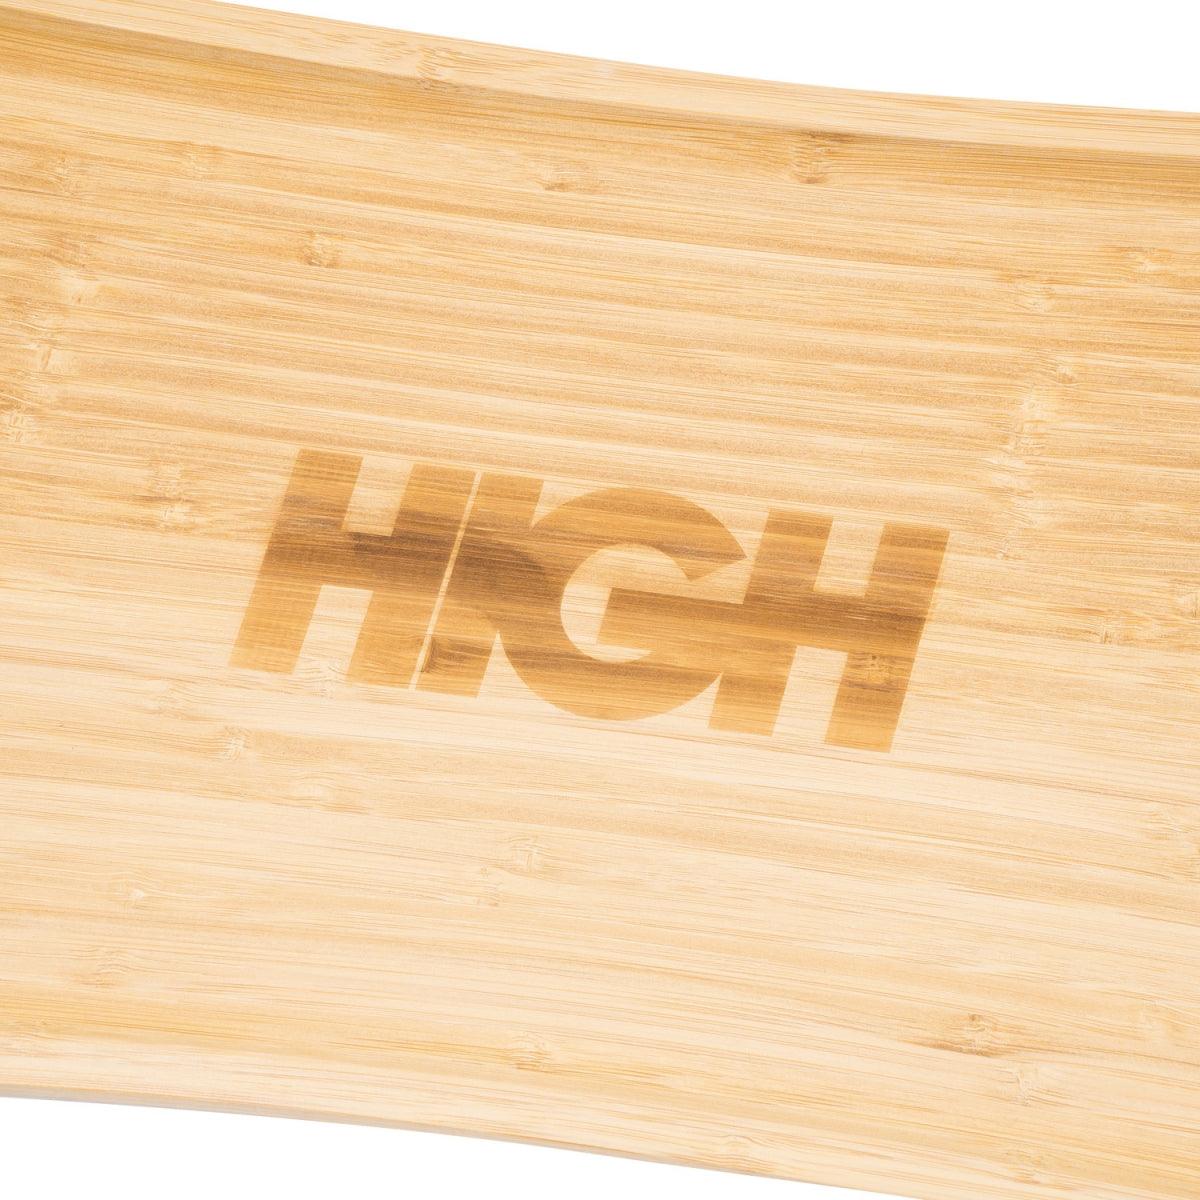 HIGH - Bamboo Tray Logo - Slow Office